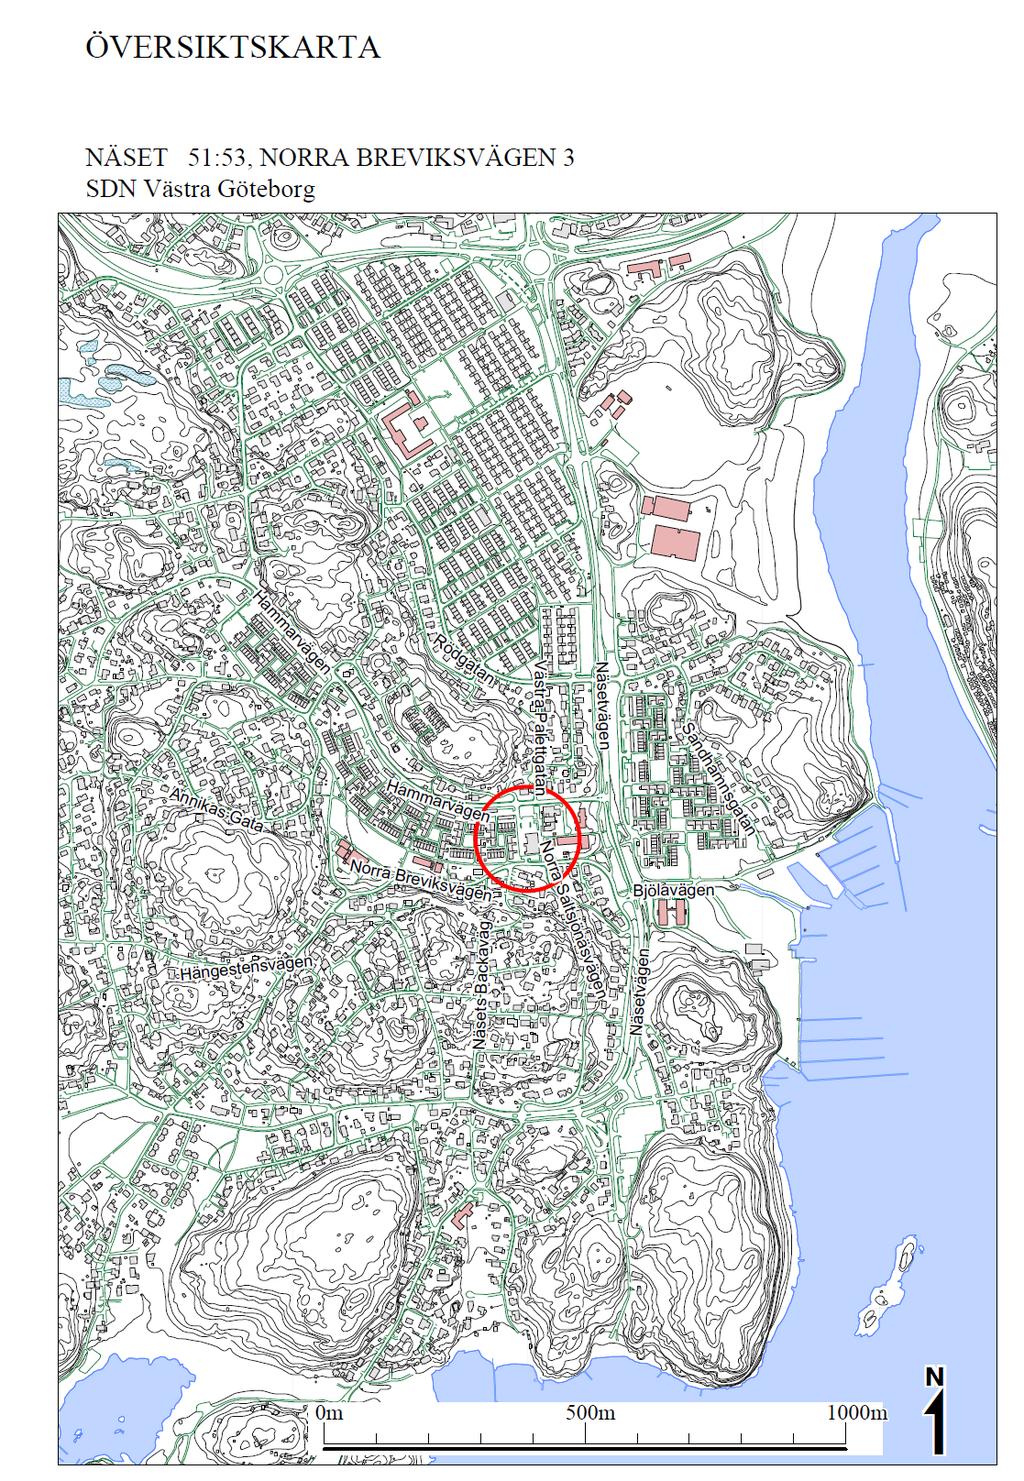 Näset 51:53 Fastighetens läge i Älvsborg Gällande plan Kommunens översiktsplan anger bebyggelseområde med grön- och rekreationsytor utan särskilda restriktioner för områdets användning.